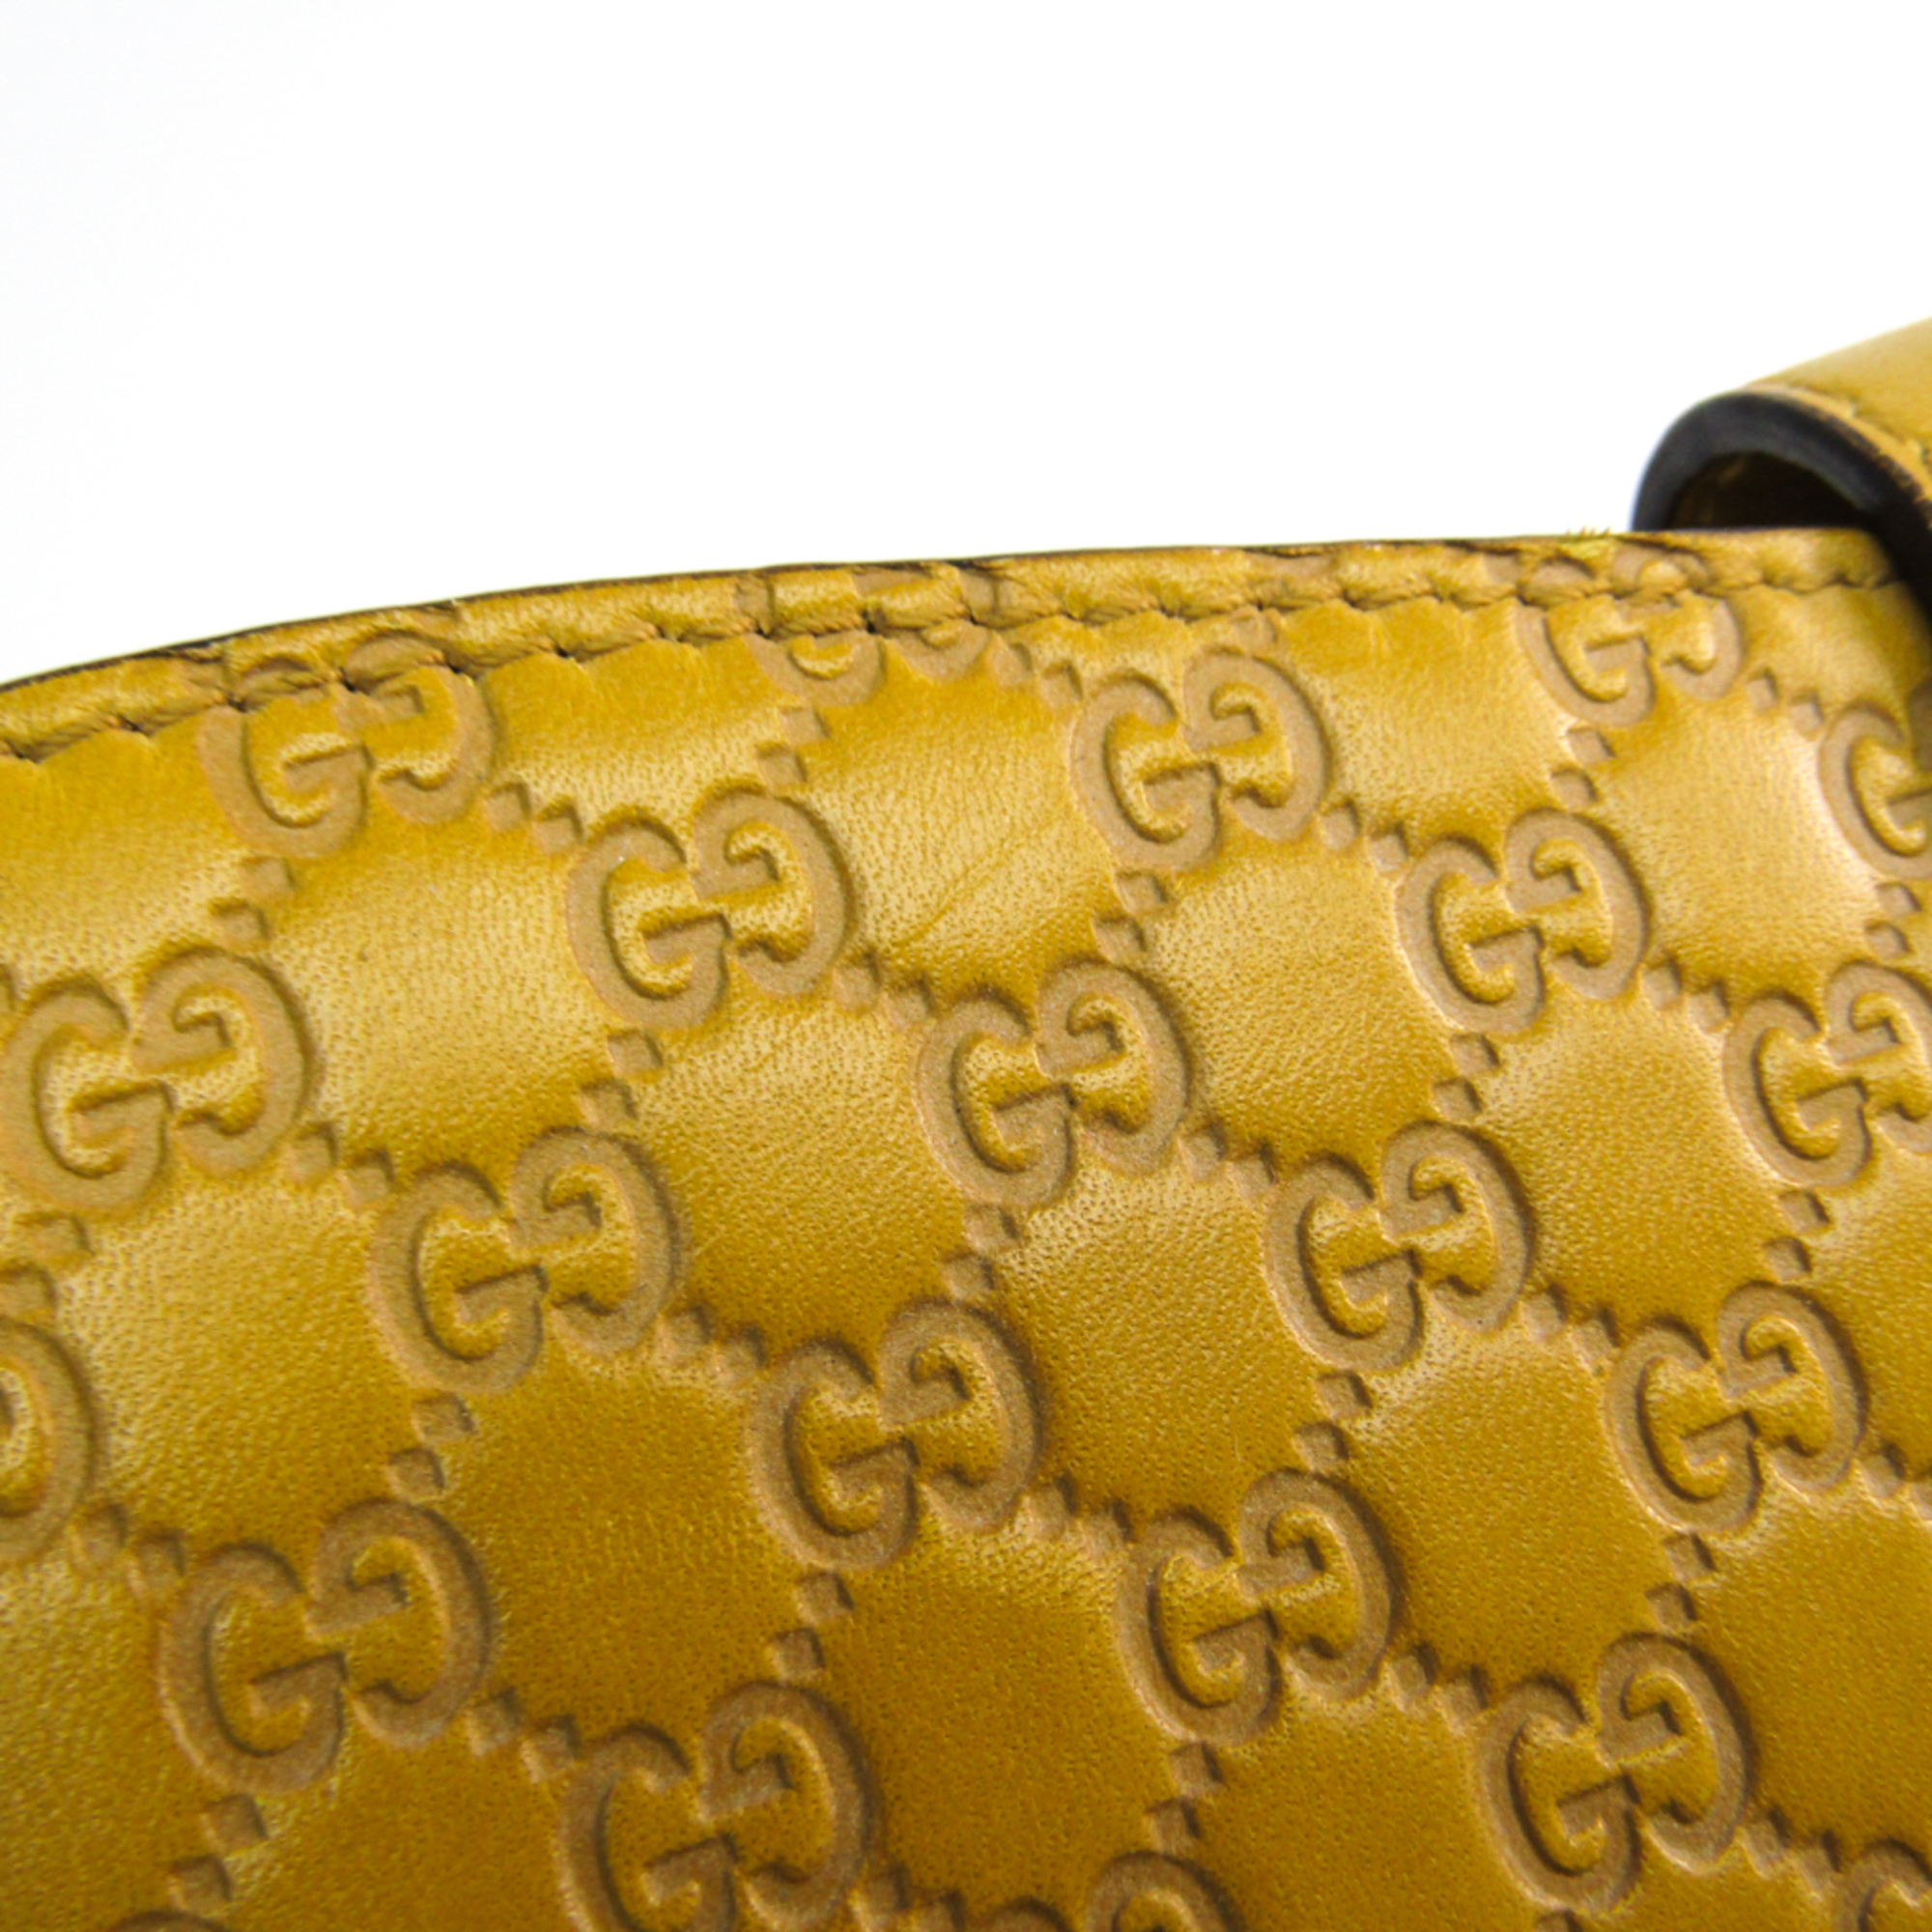 Gucci Tablet Case For IPad Dark Yellow Micro Gucci Shima accessory case 256575